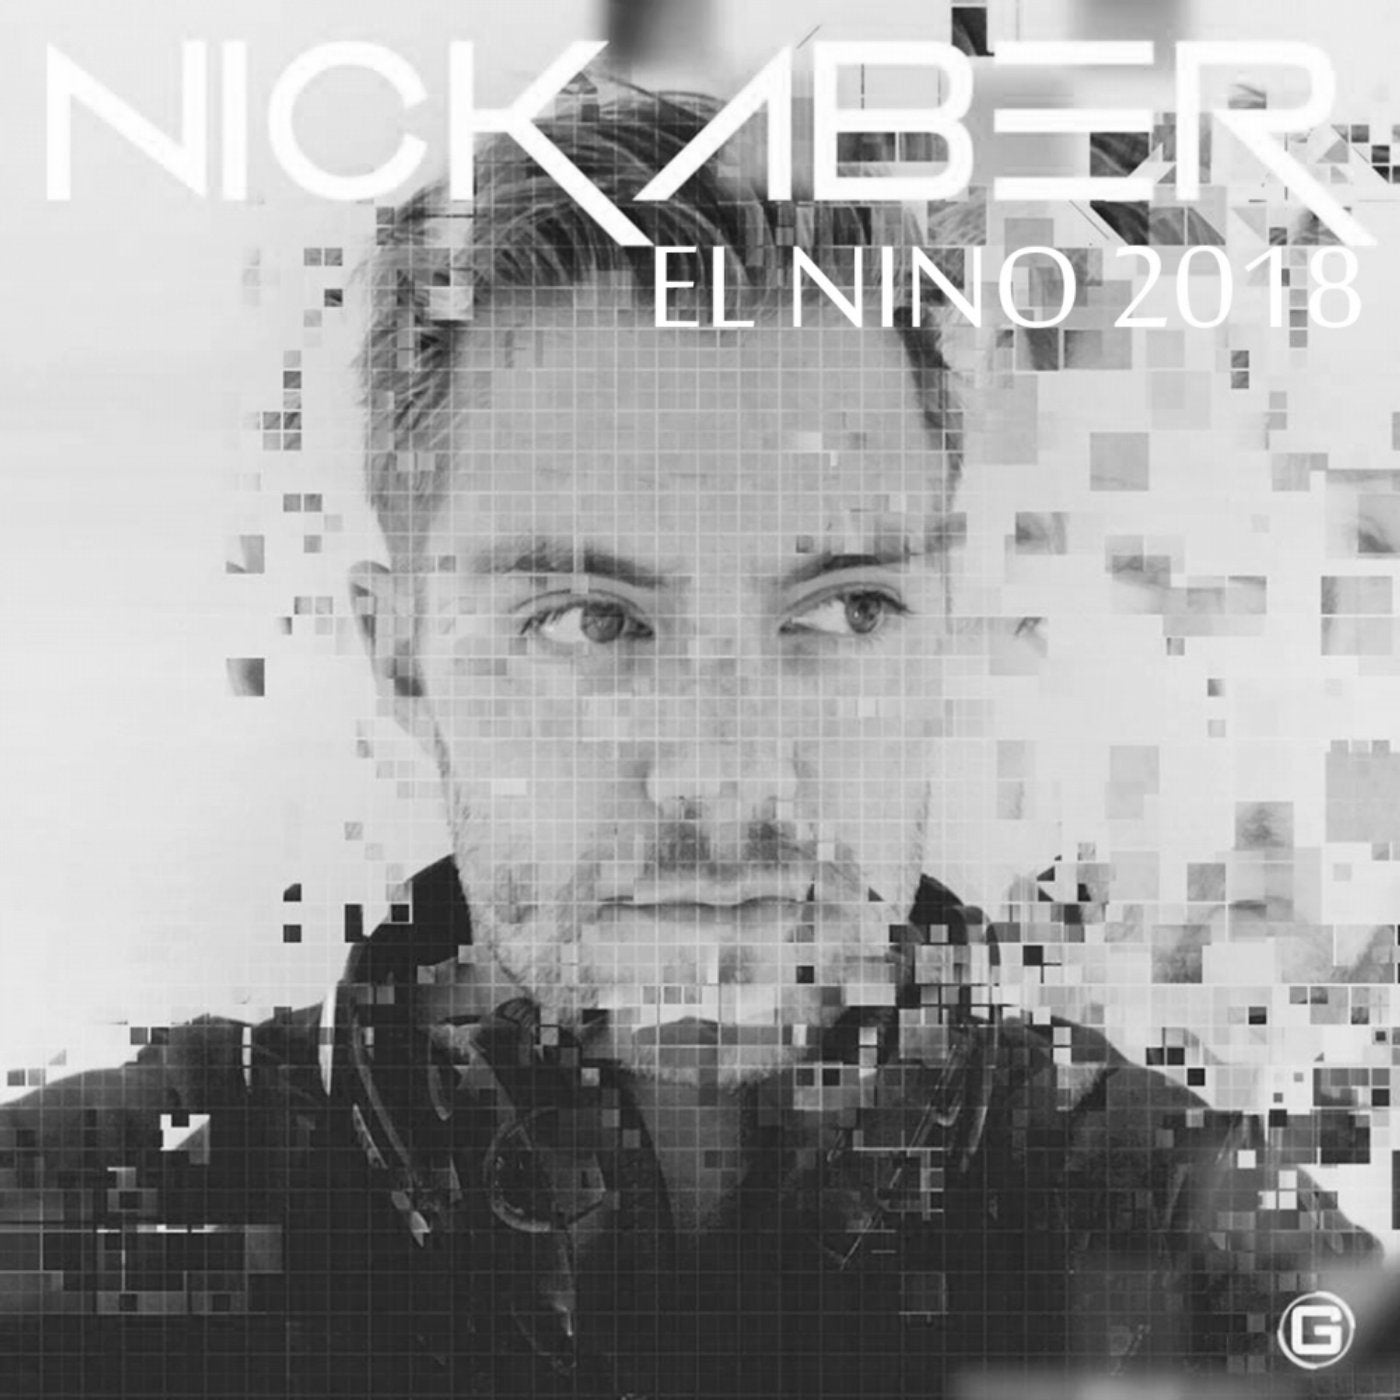 El Nino 2018 (Nick Aber Remix)